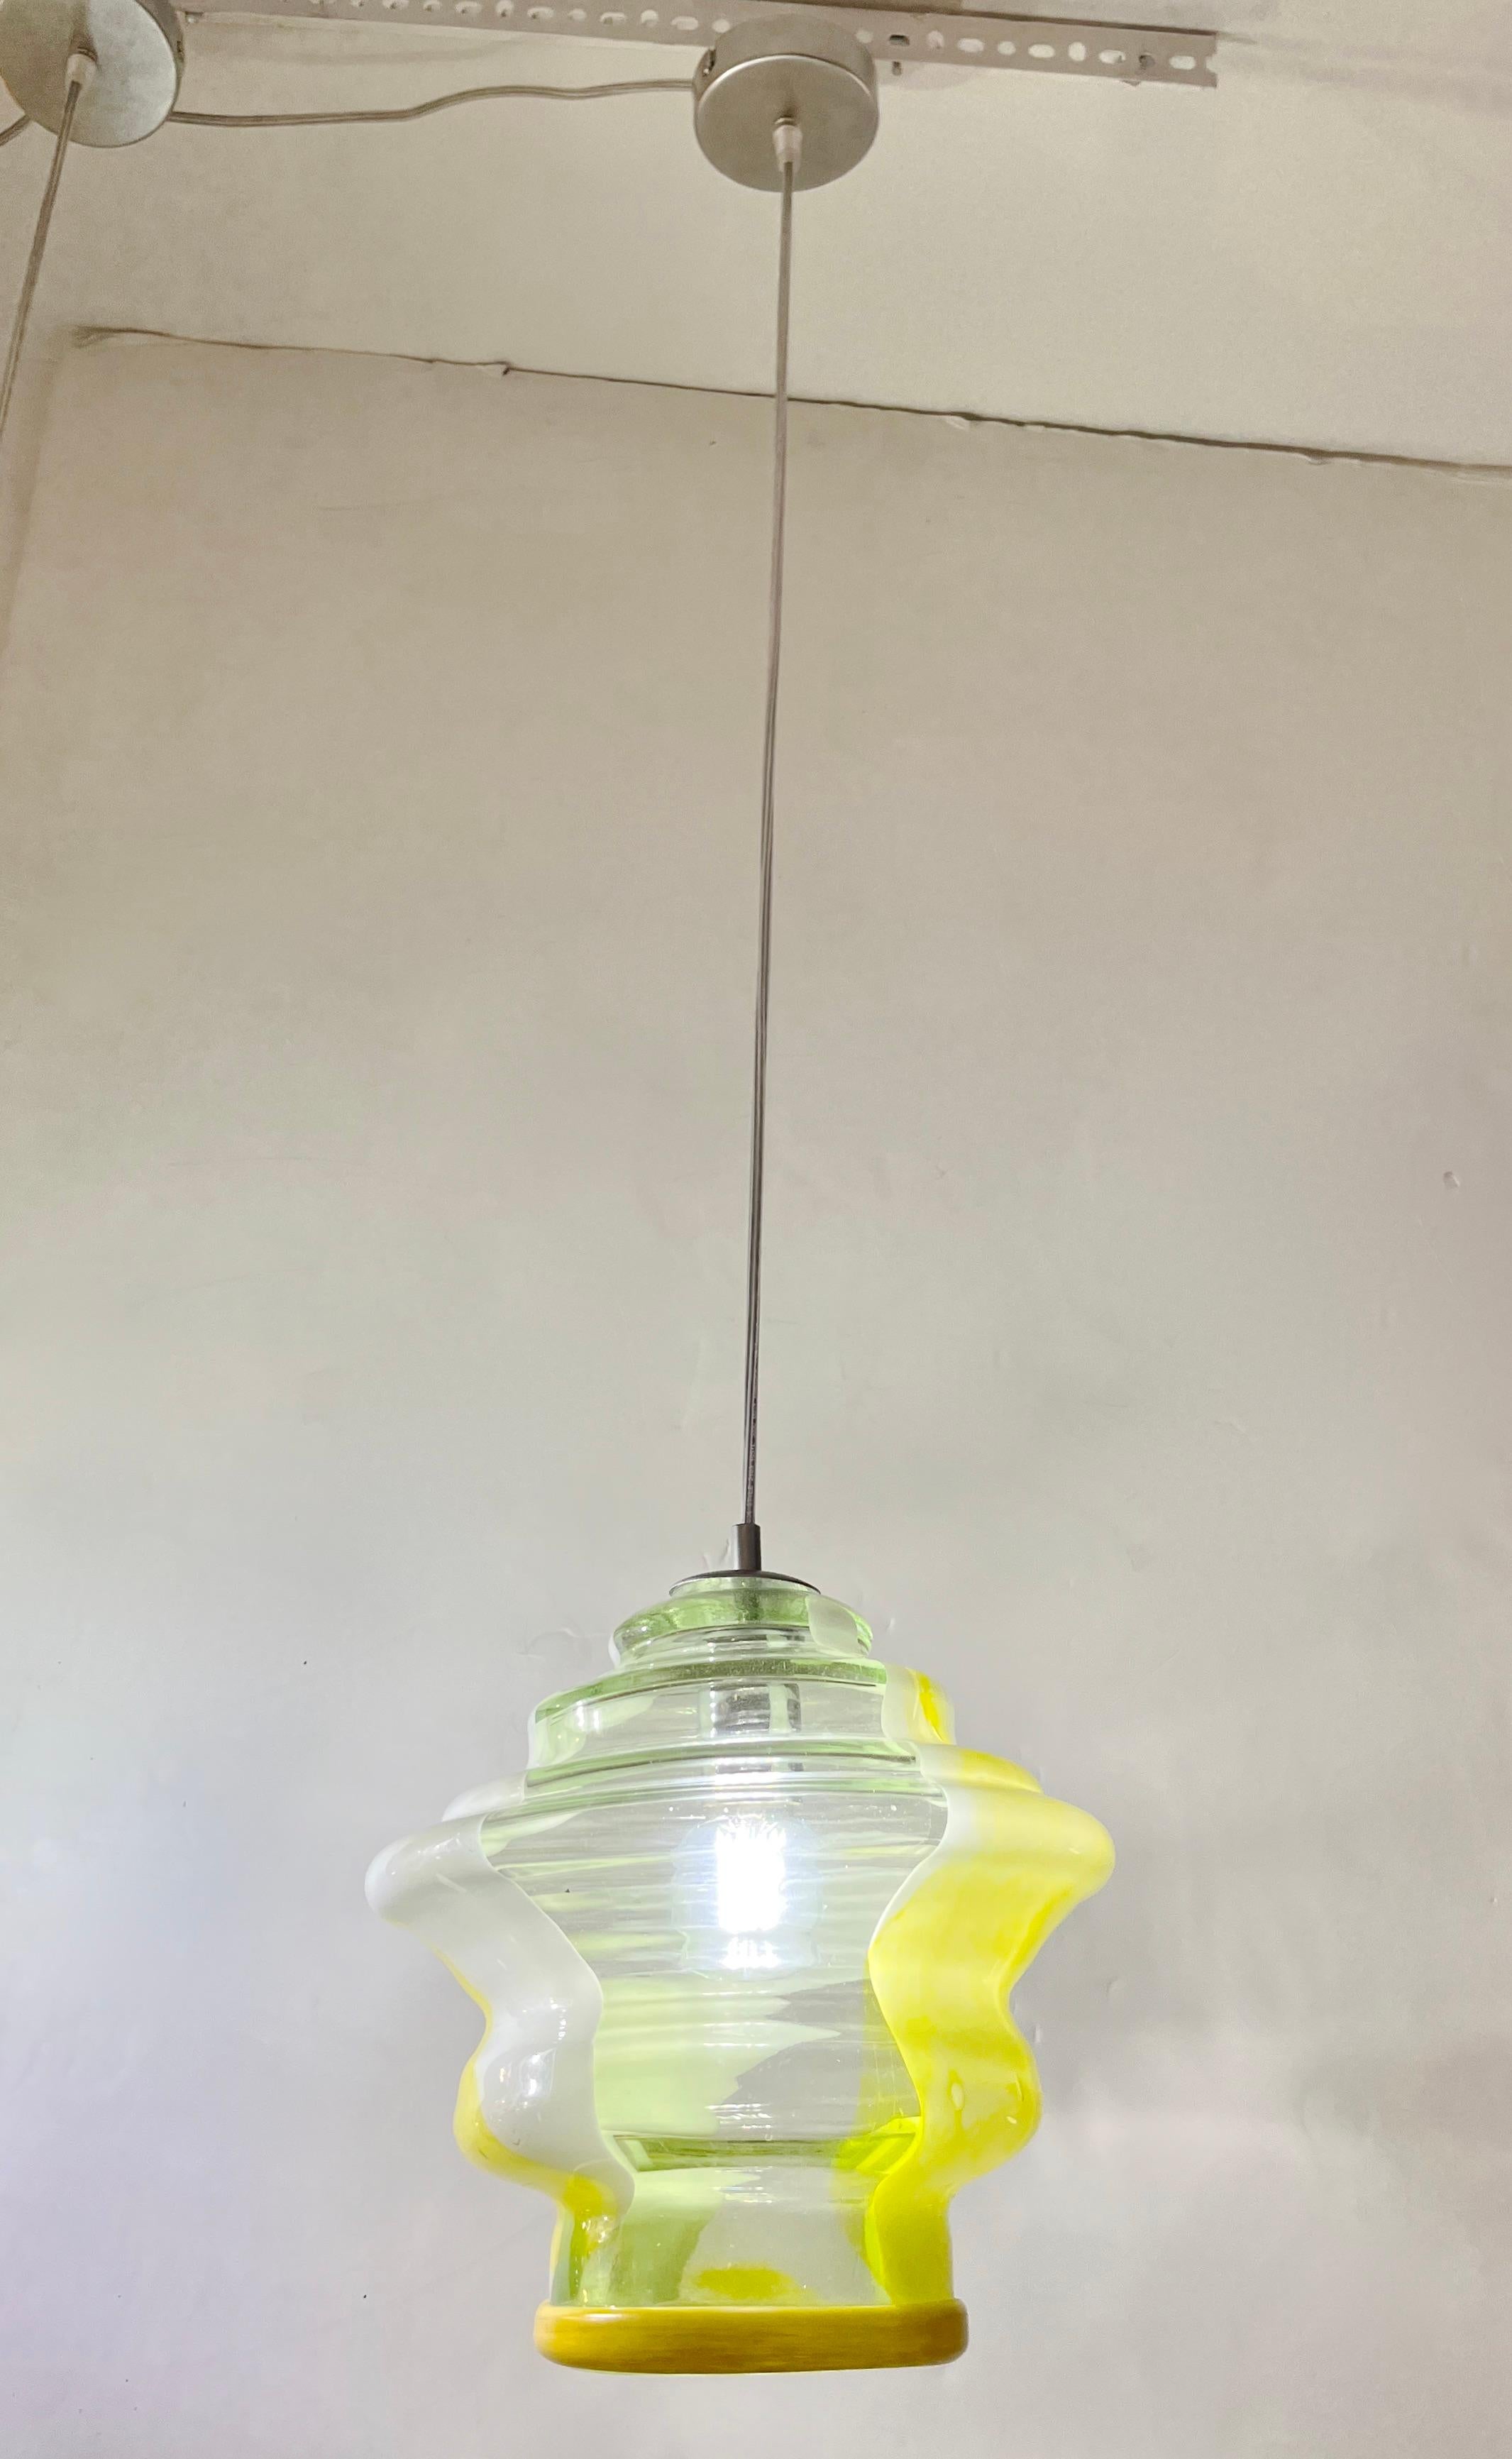 Luminaire suspendu contemporain italien amusant et élégant, fait sur mesure, de conception moderne organique, entièrement réalisé à la main et réglable en hauteur, composé d'un abat-jour circulaire à plusieurs niveaux en verre soufflé de Murano